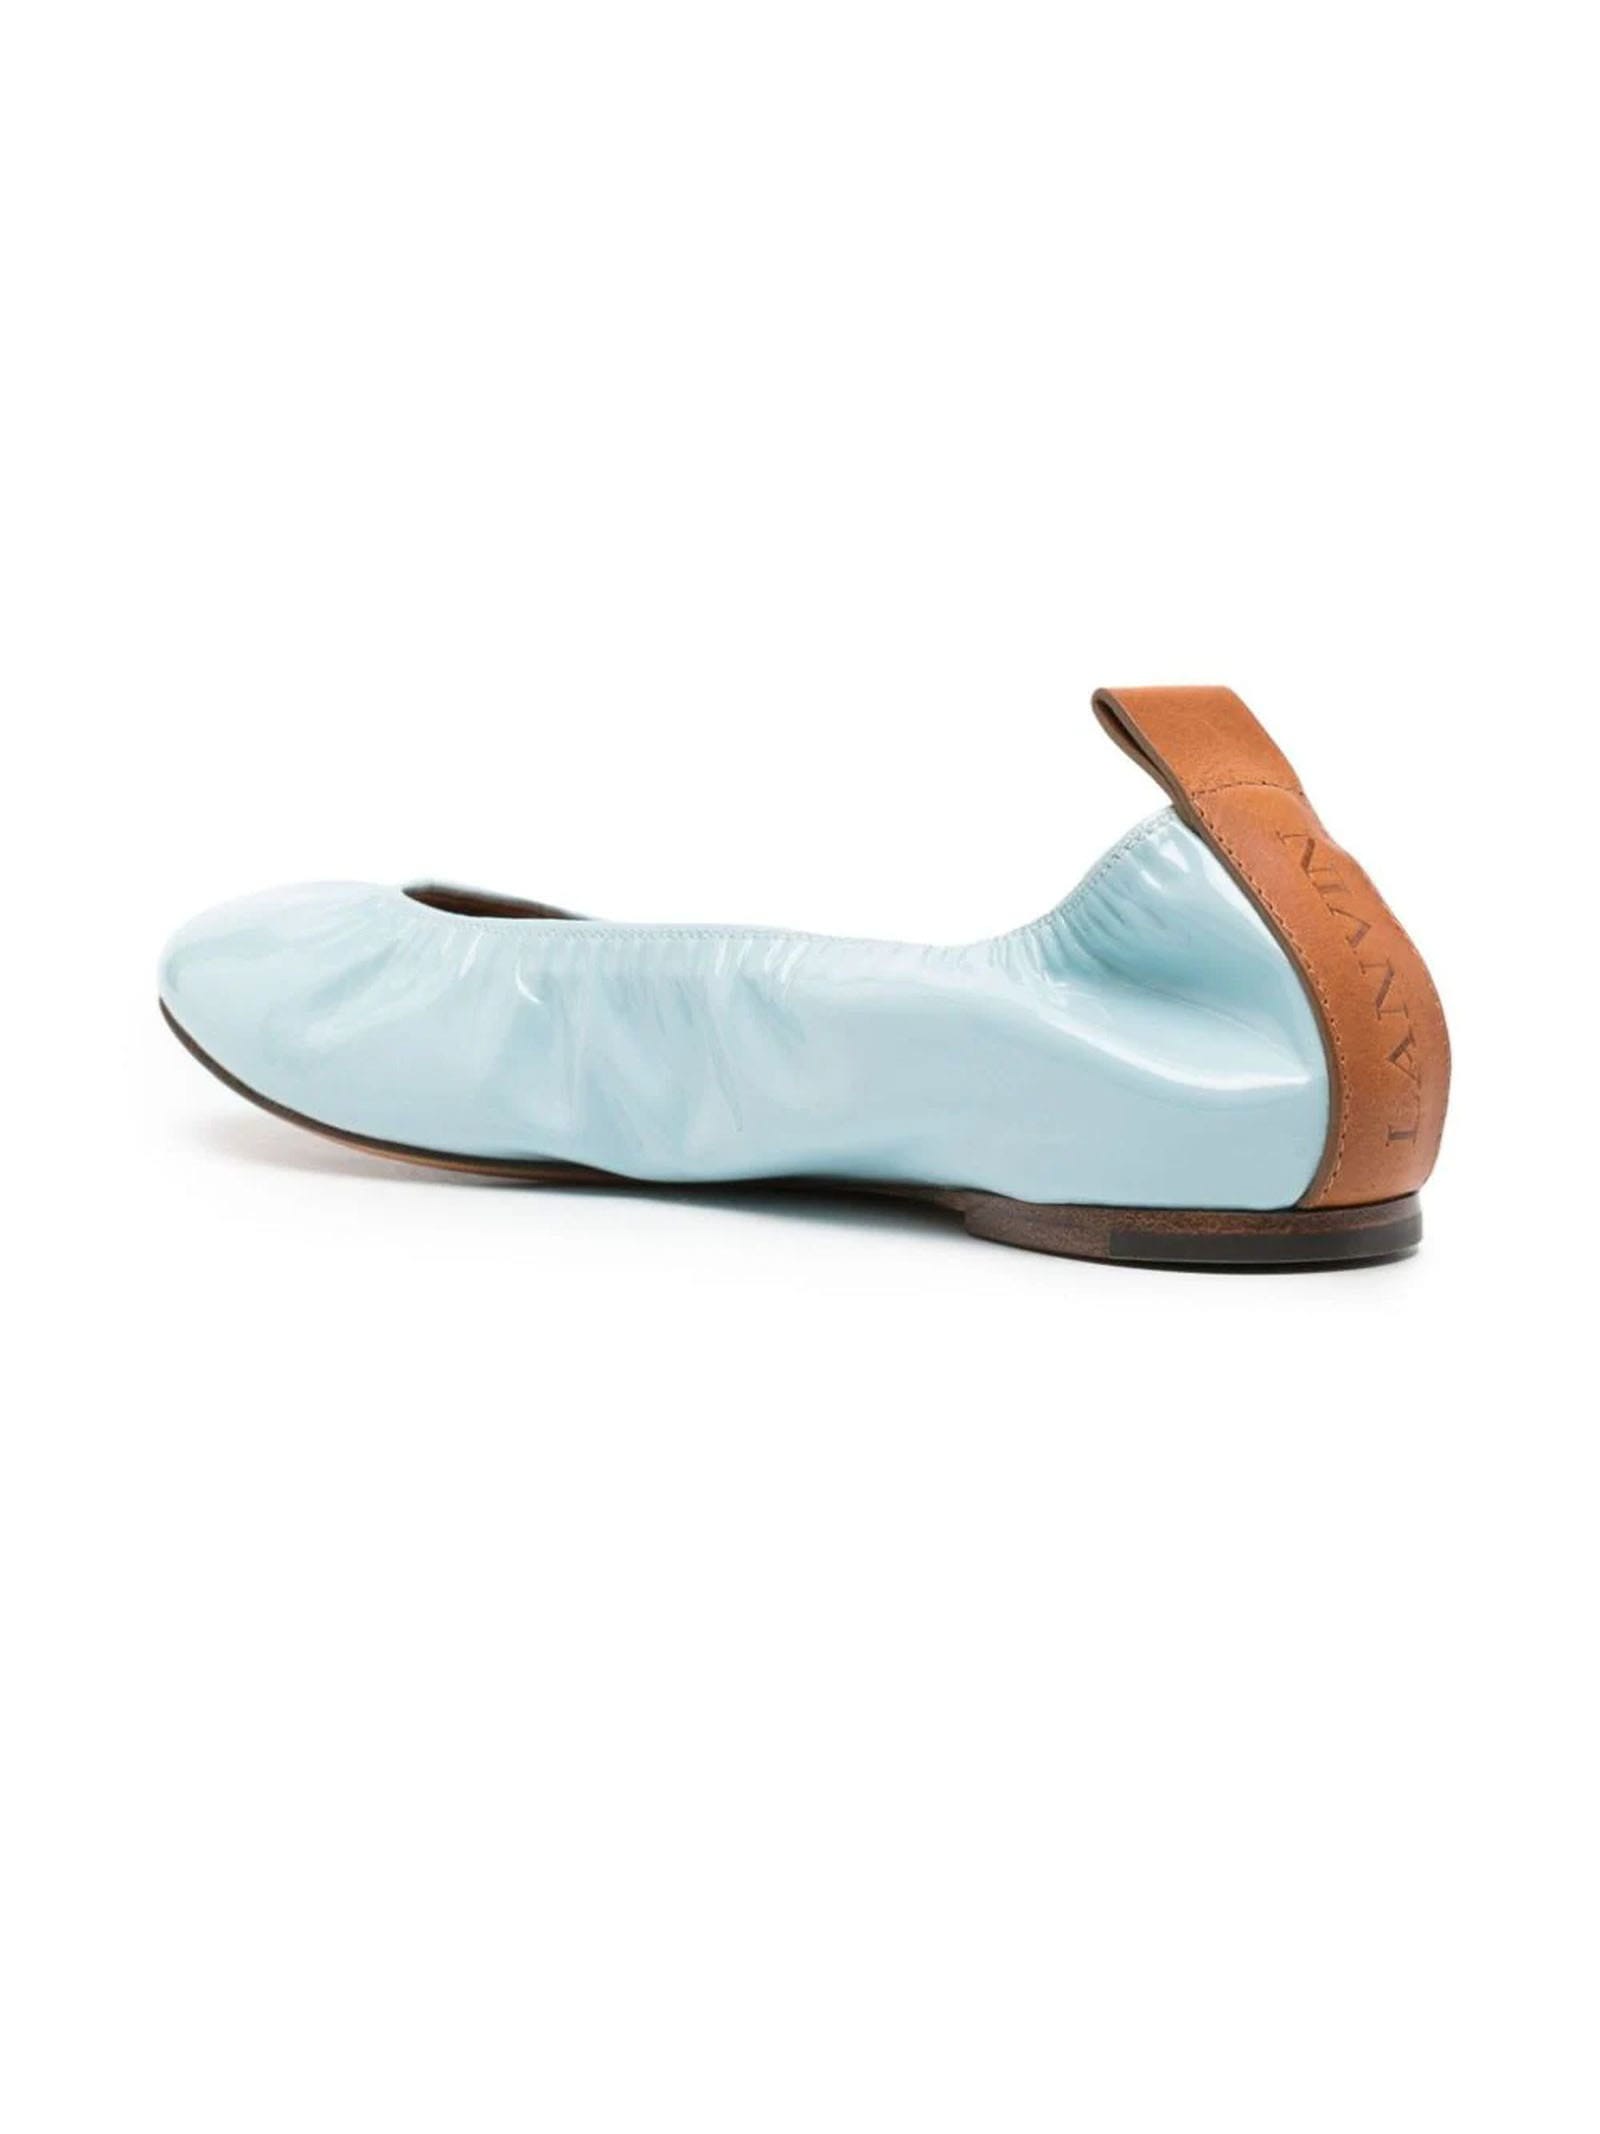 Shop Lanvin Sky Blue Patent Leather Ballerina Shoes